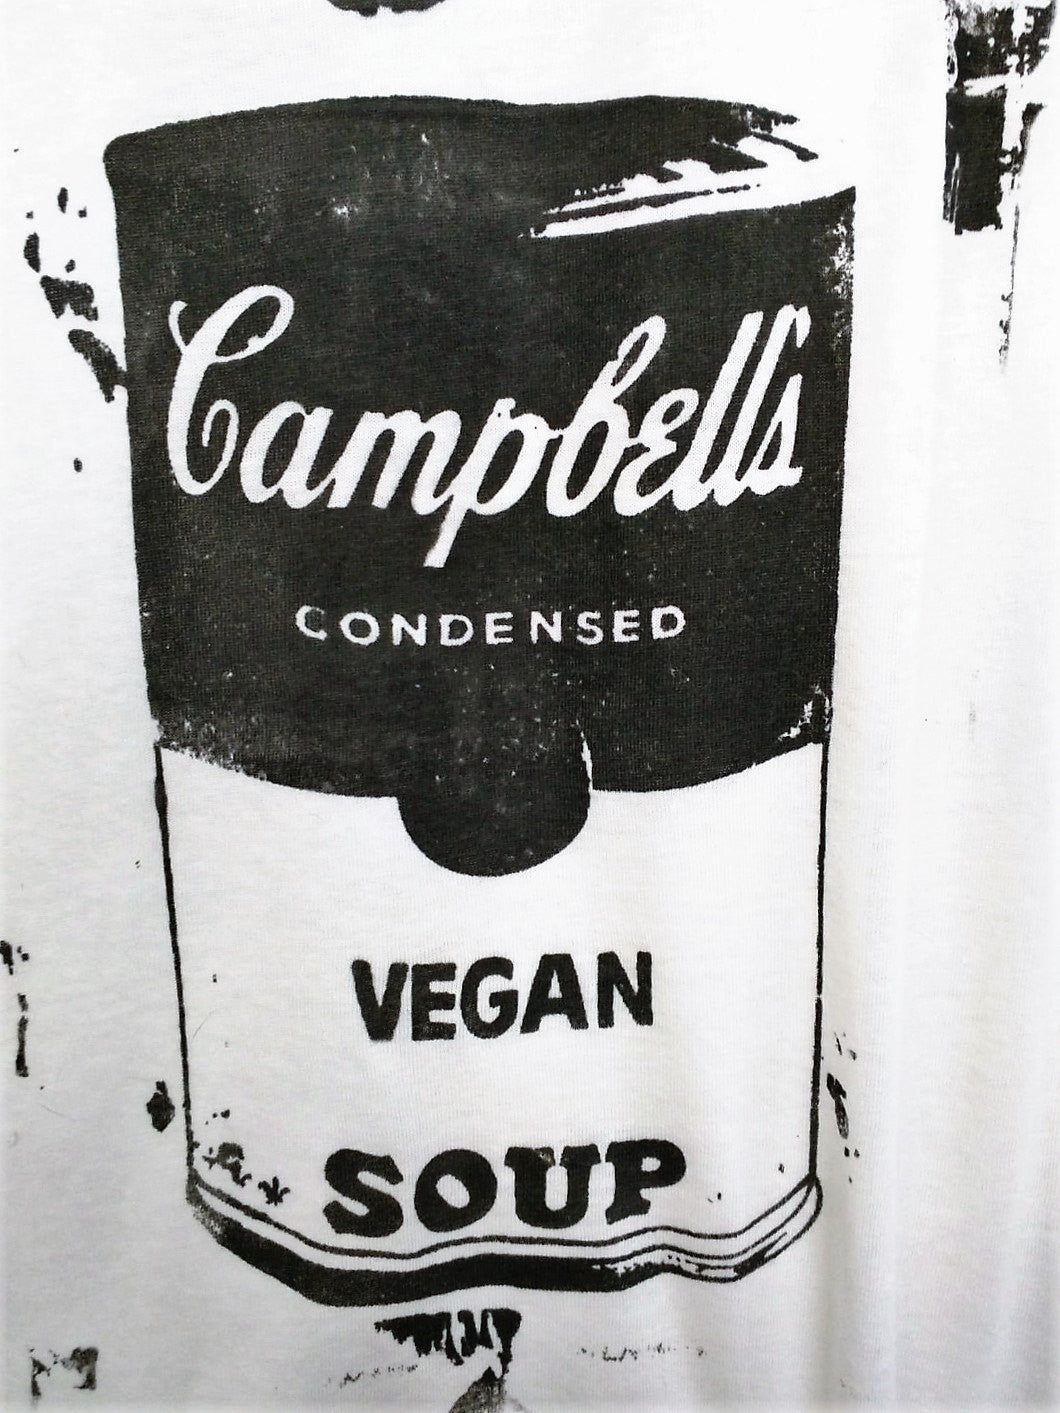 Vegan Soup is King! T-shirt a la Warhol w Basquiat Crown